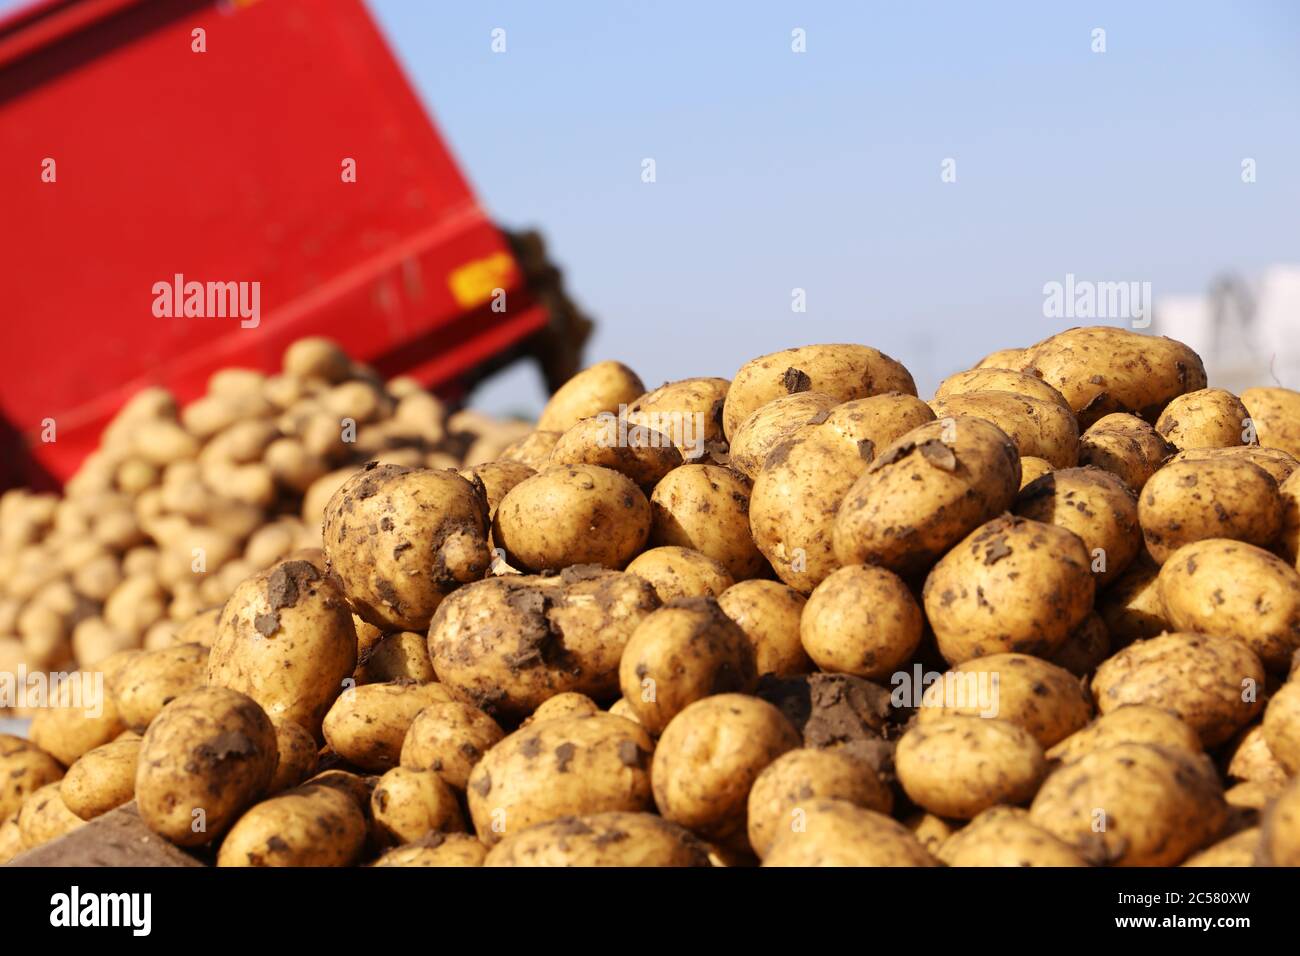 Landwirt Hartmut Magin aus Mutterstadt beim Kartoffeln Roden von Speisefrühkartoffeln in der Pfalz (Mutterstadt, Rheinland-Pfalz) Foto Stock